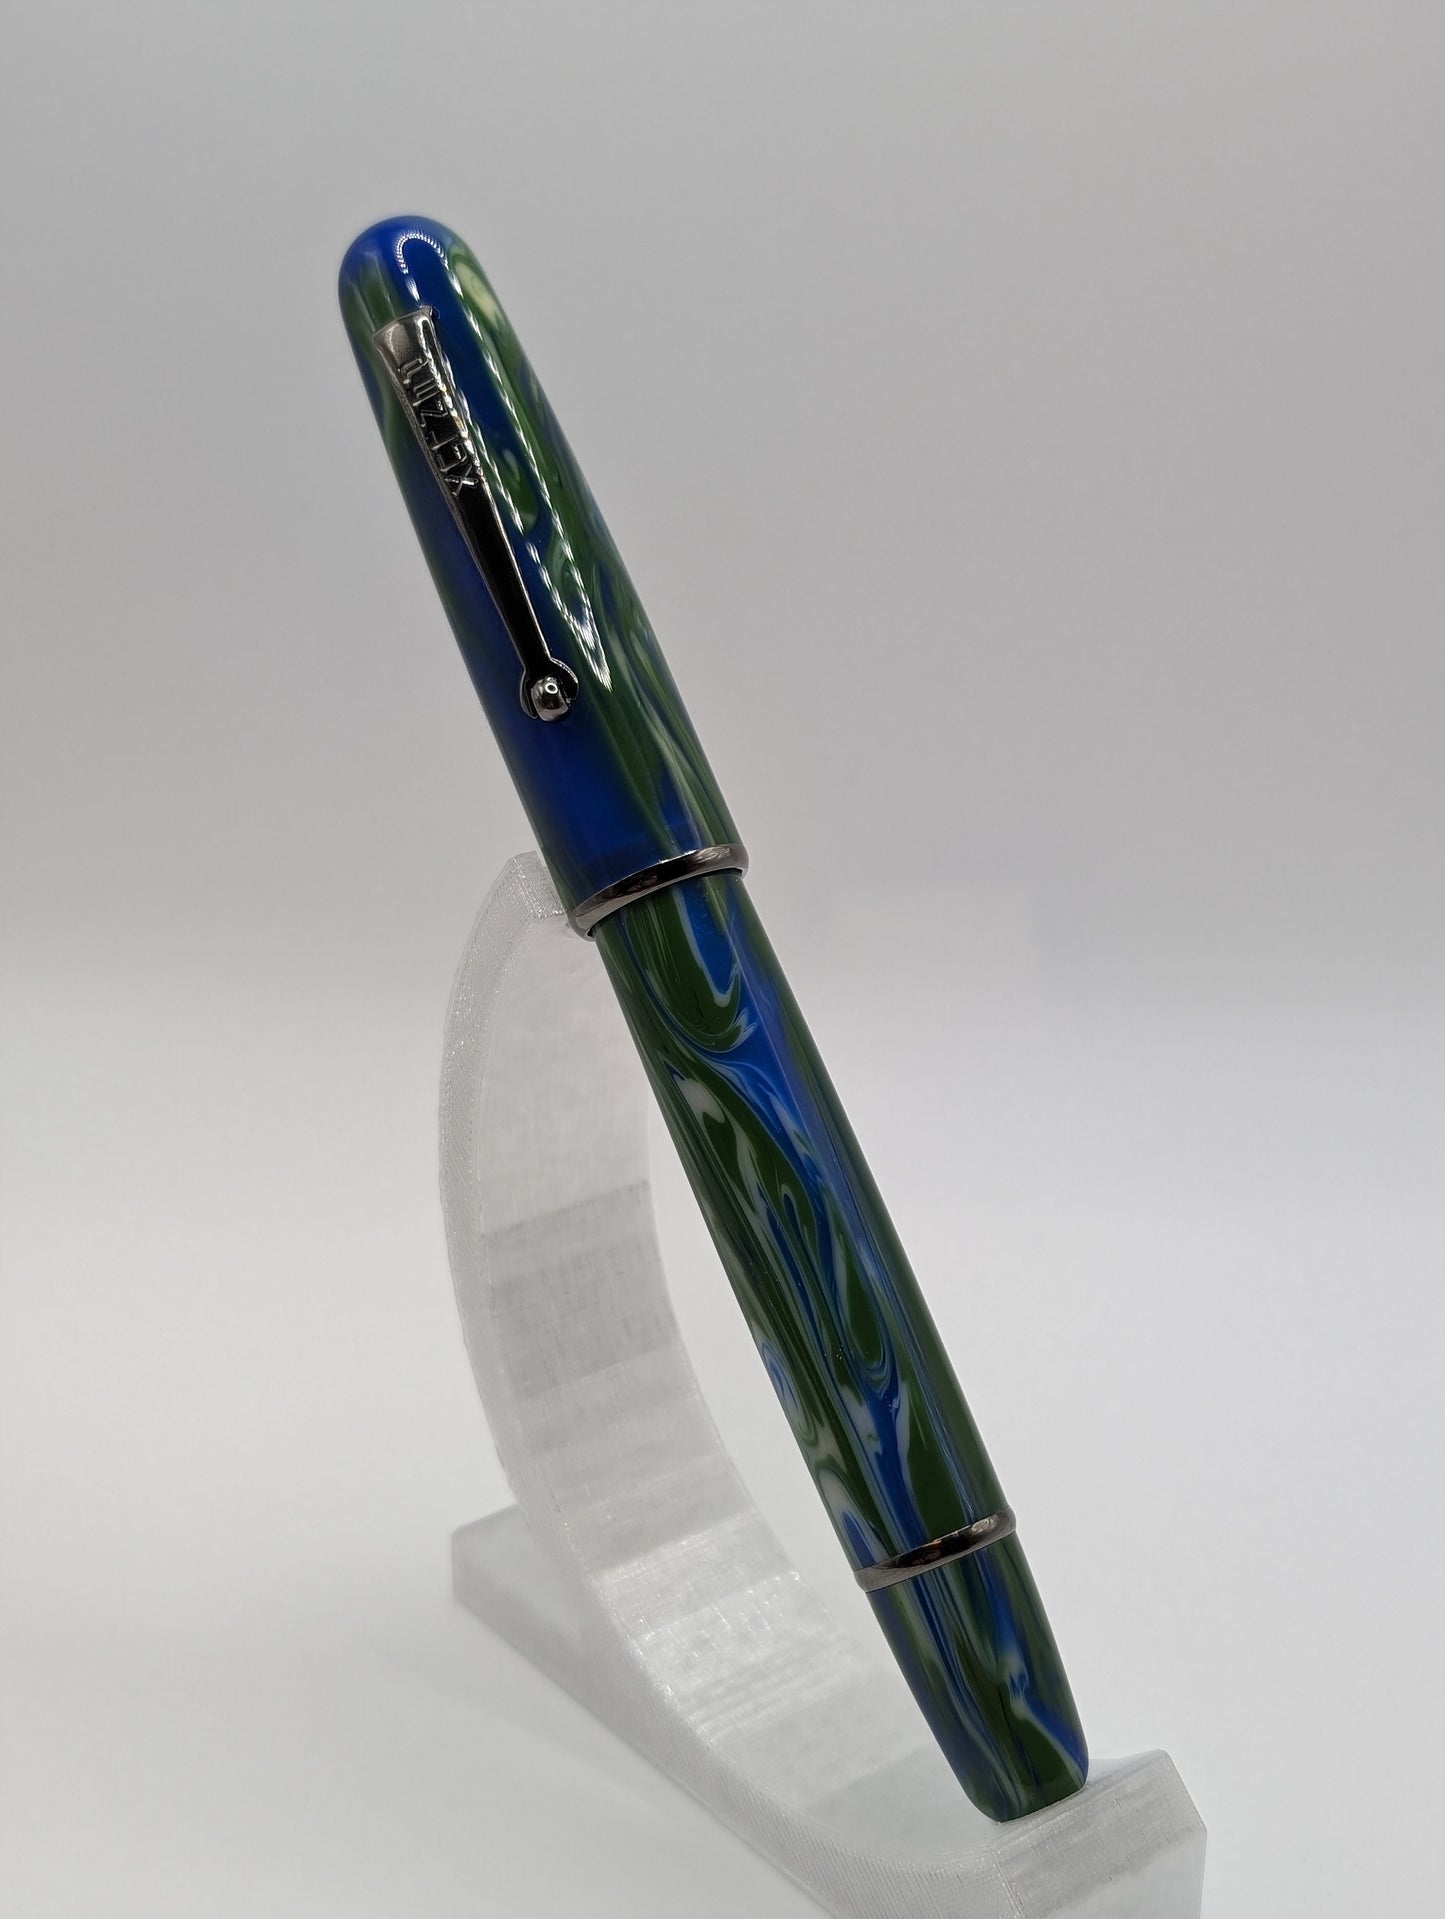 Penlux Delgado Limited Edition "The Green Earth" Elite Fountain Pen